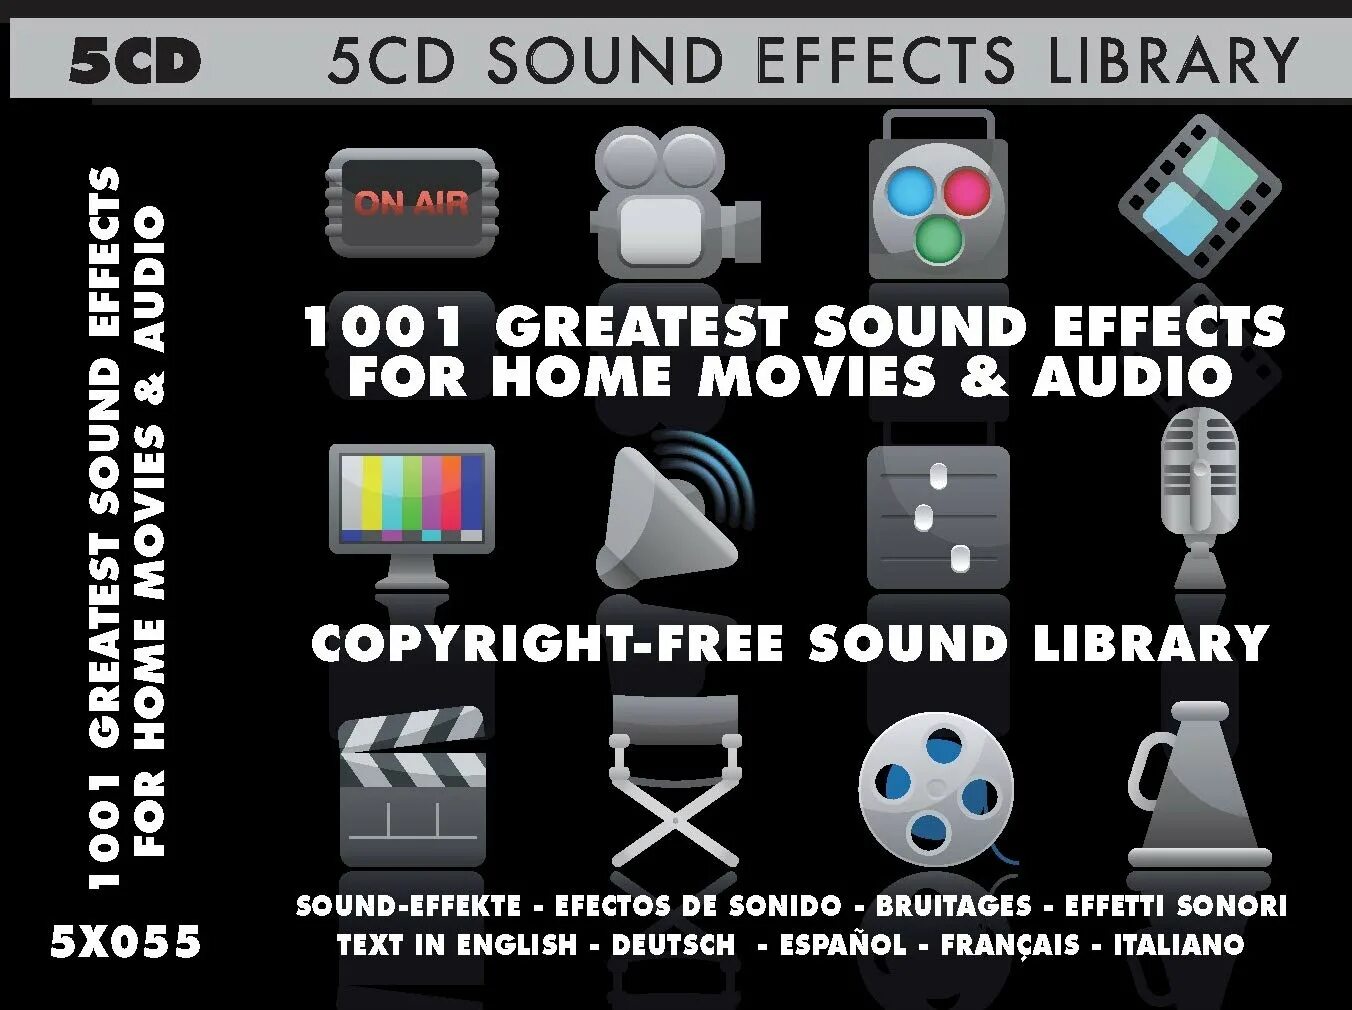 Effects library. Sound Effect. Sound Effects Library. CD Sound. Network Sound Effects Library.